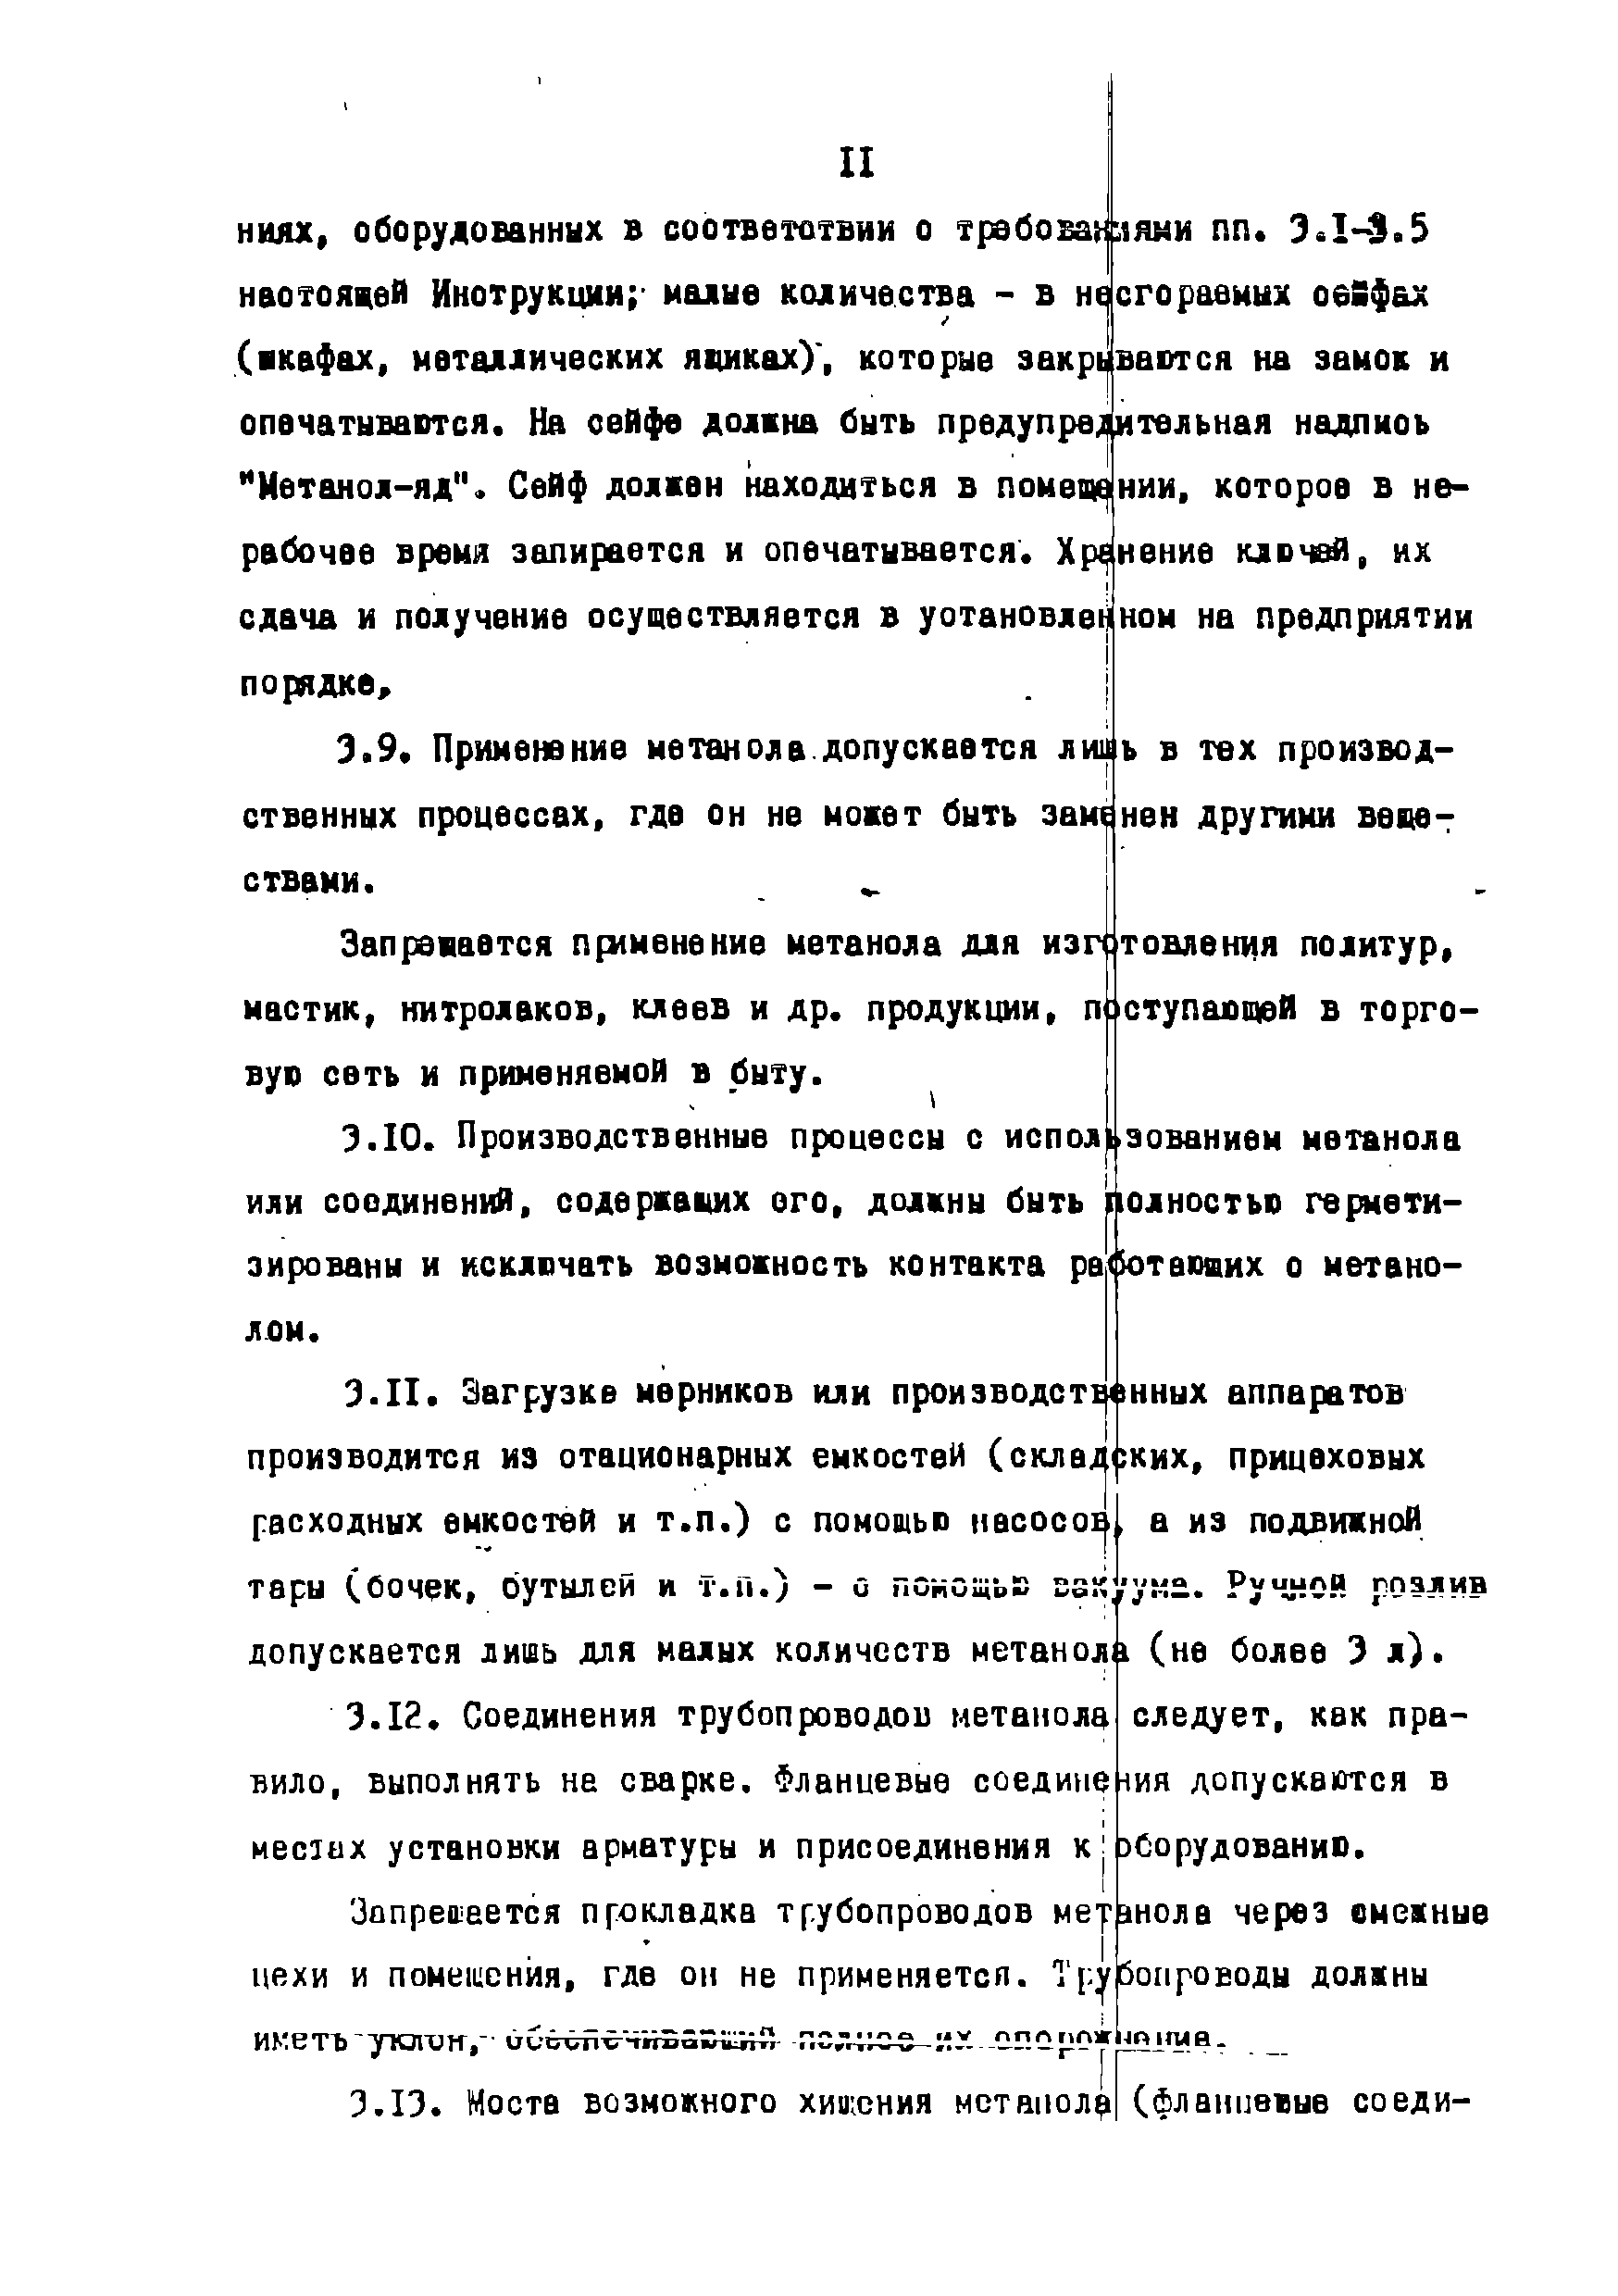 ВНЭ 28-86/Минхимпром